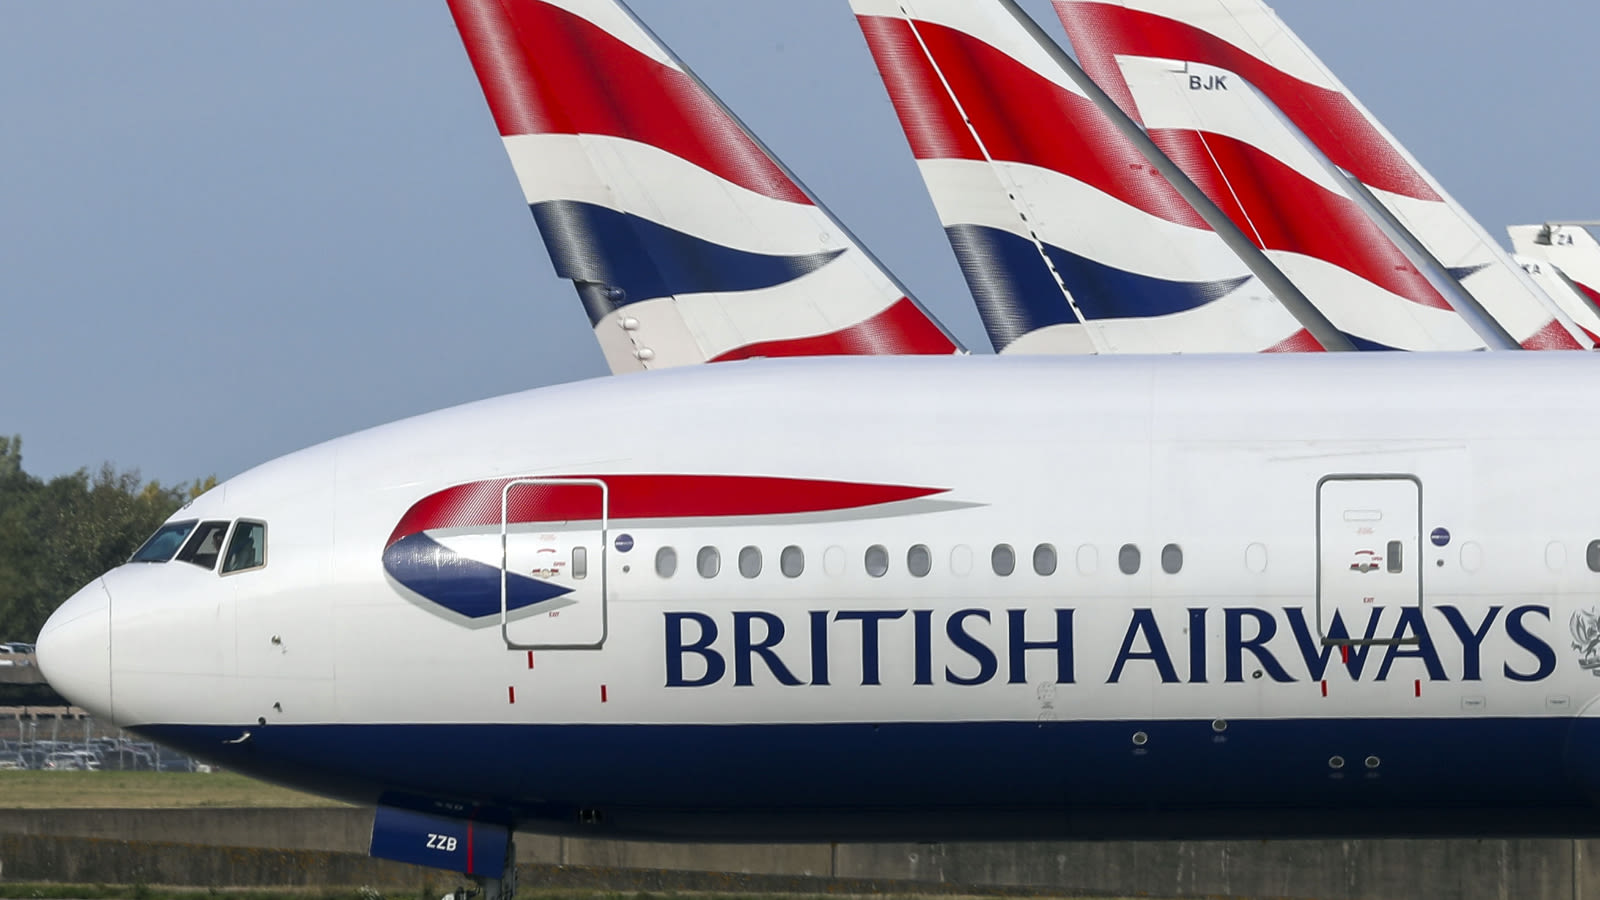 Former British Airways employee 'ran multi-million pound immigration scam from Heathrow'